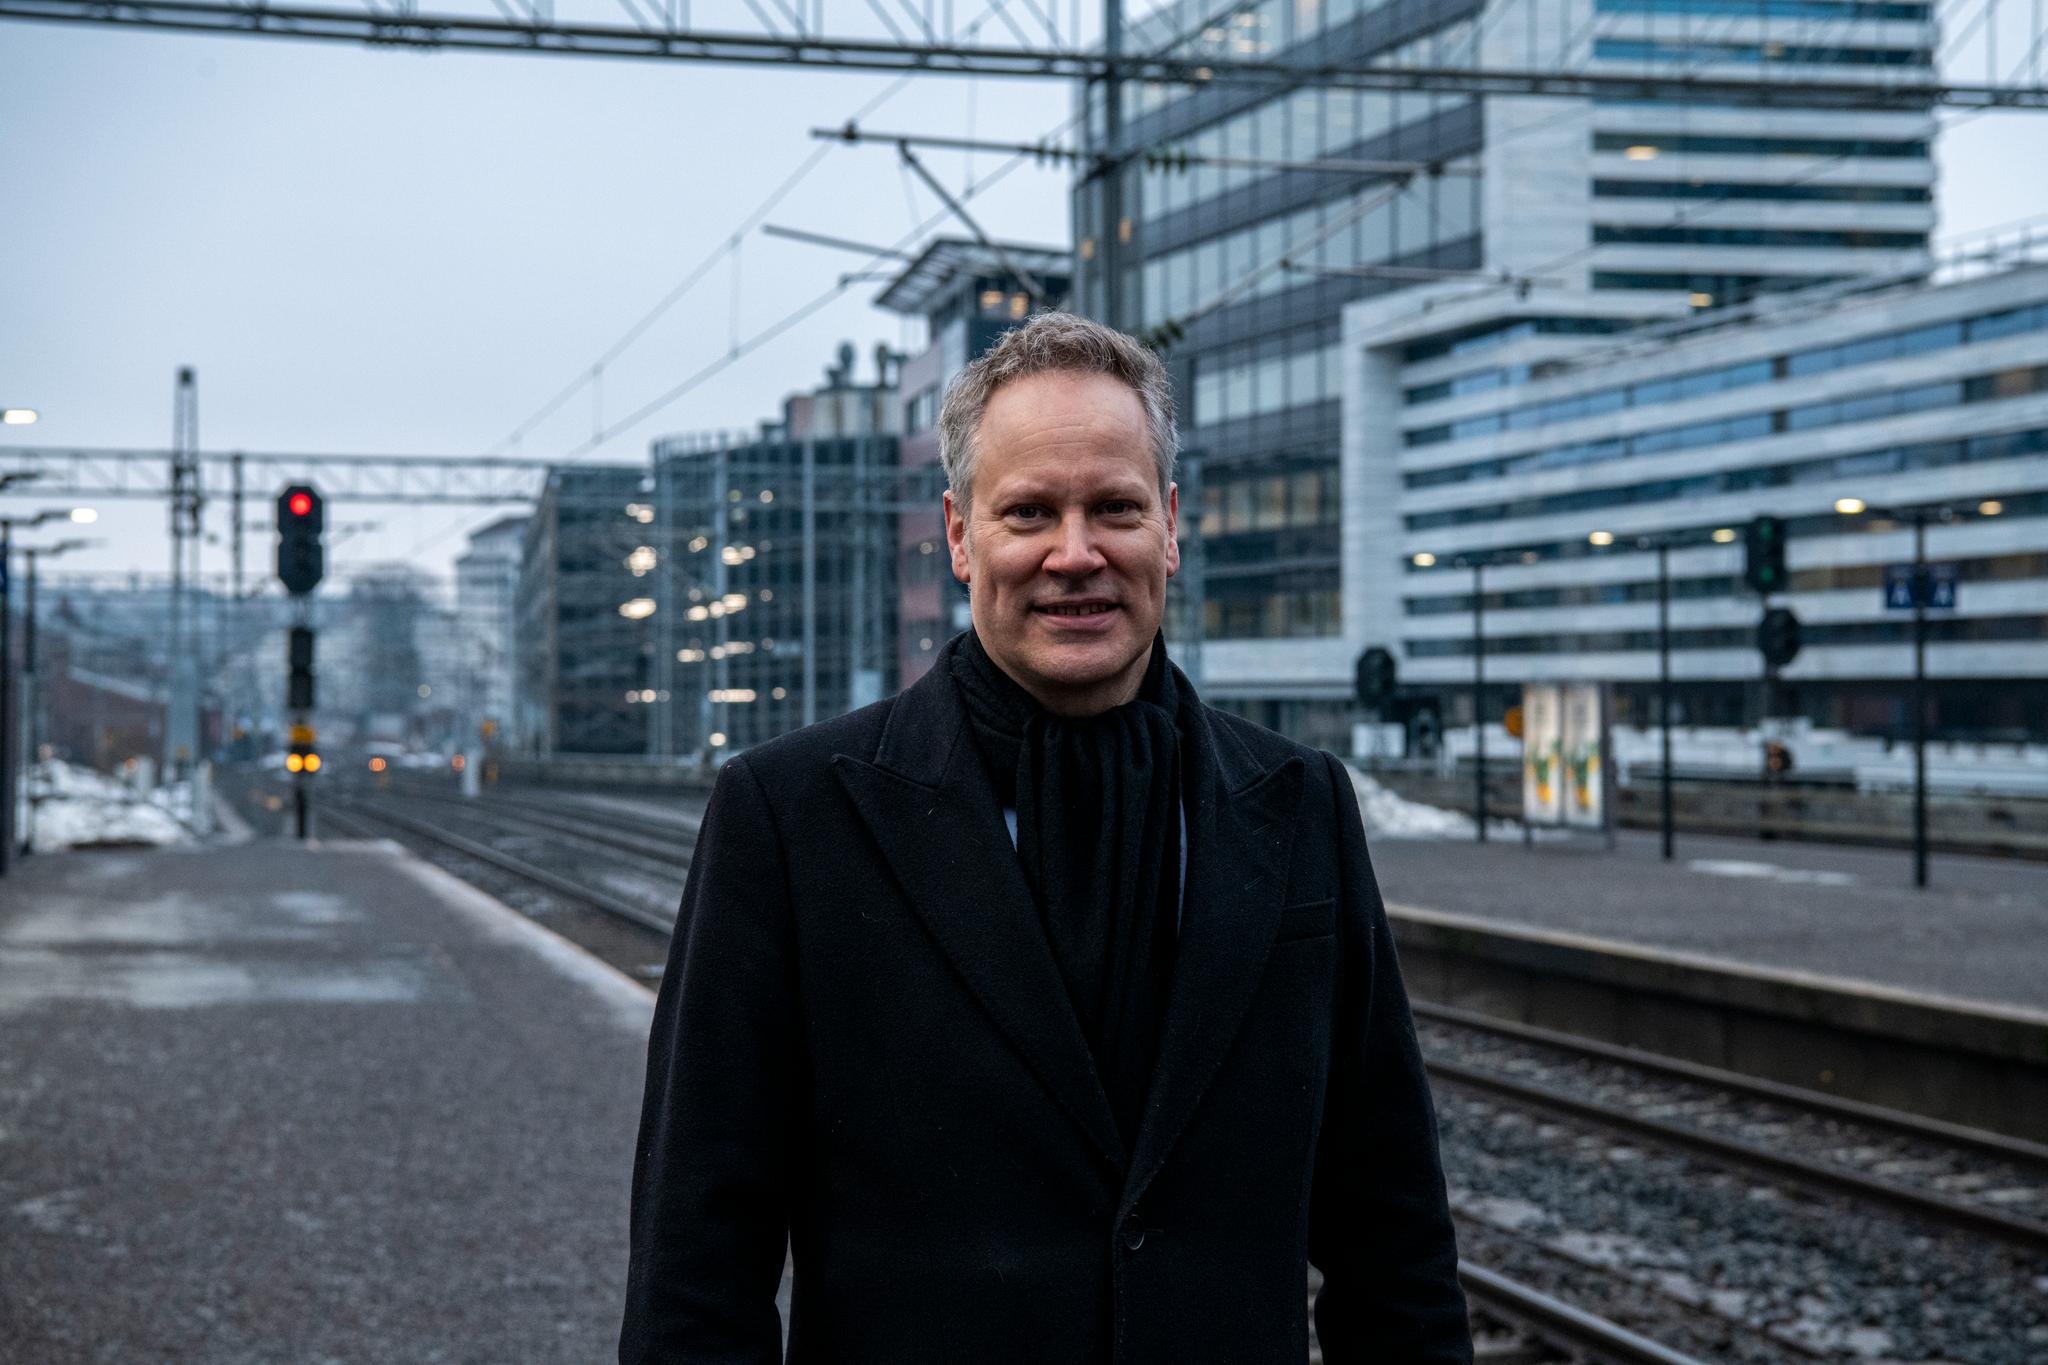 Fra Skøyen stasjon i Oslo går det 850 tog i døgnet. Stasjonen hadde omfattende problemer med forsinkelser. Nå er det brukt 240 millioner på utbedringer.